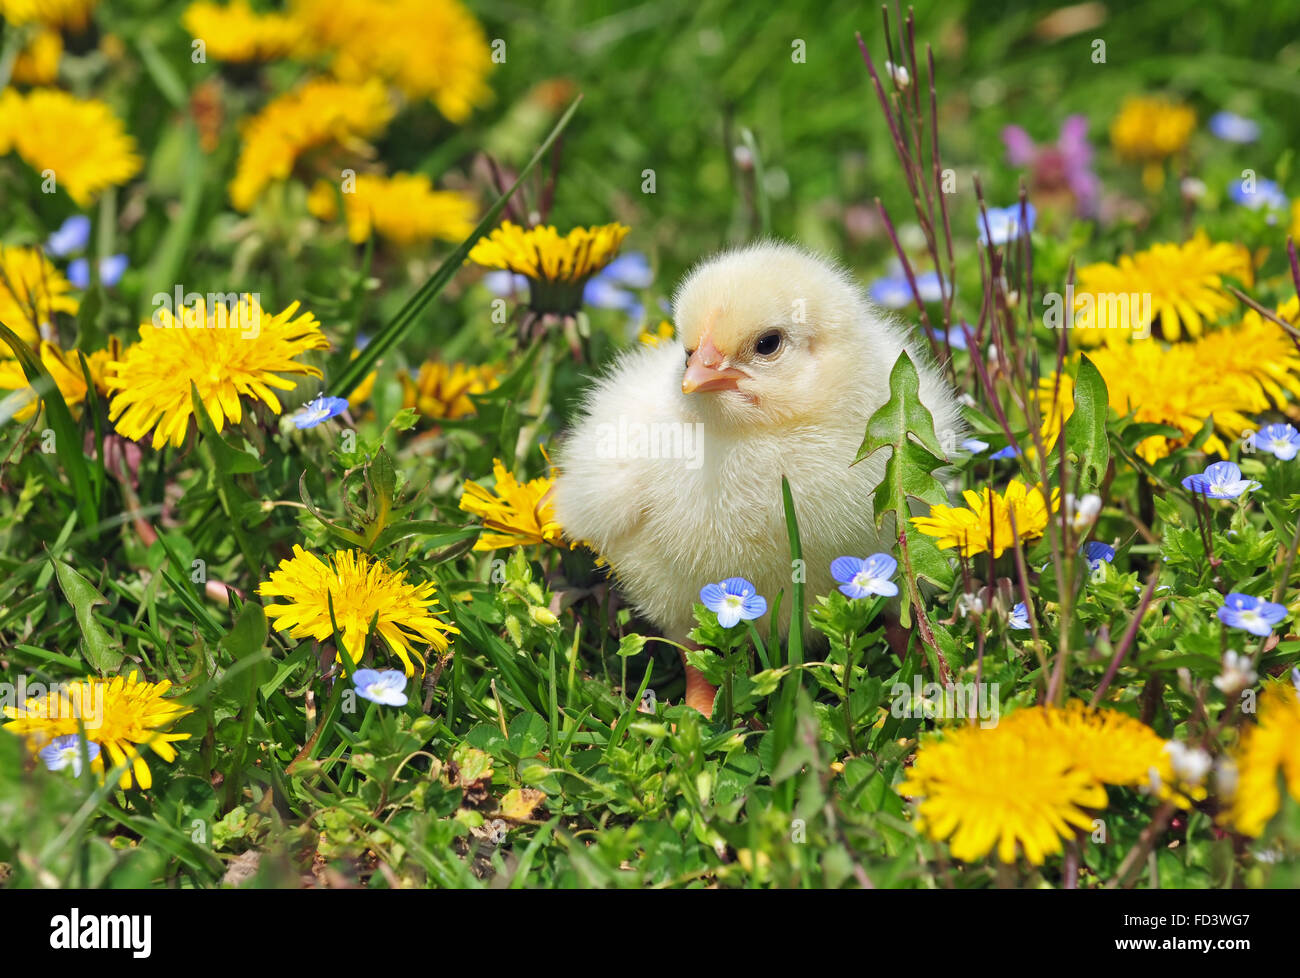 Pollo en una hierba joven Foto de stock